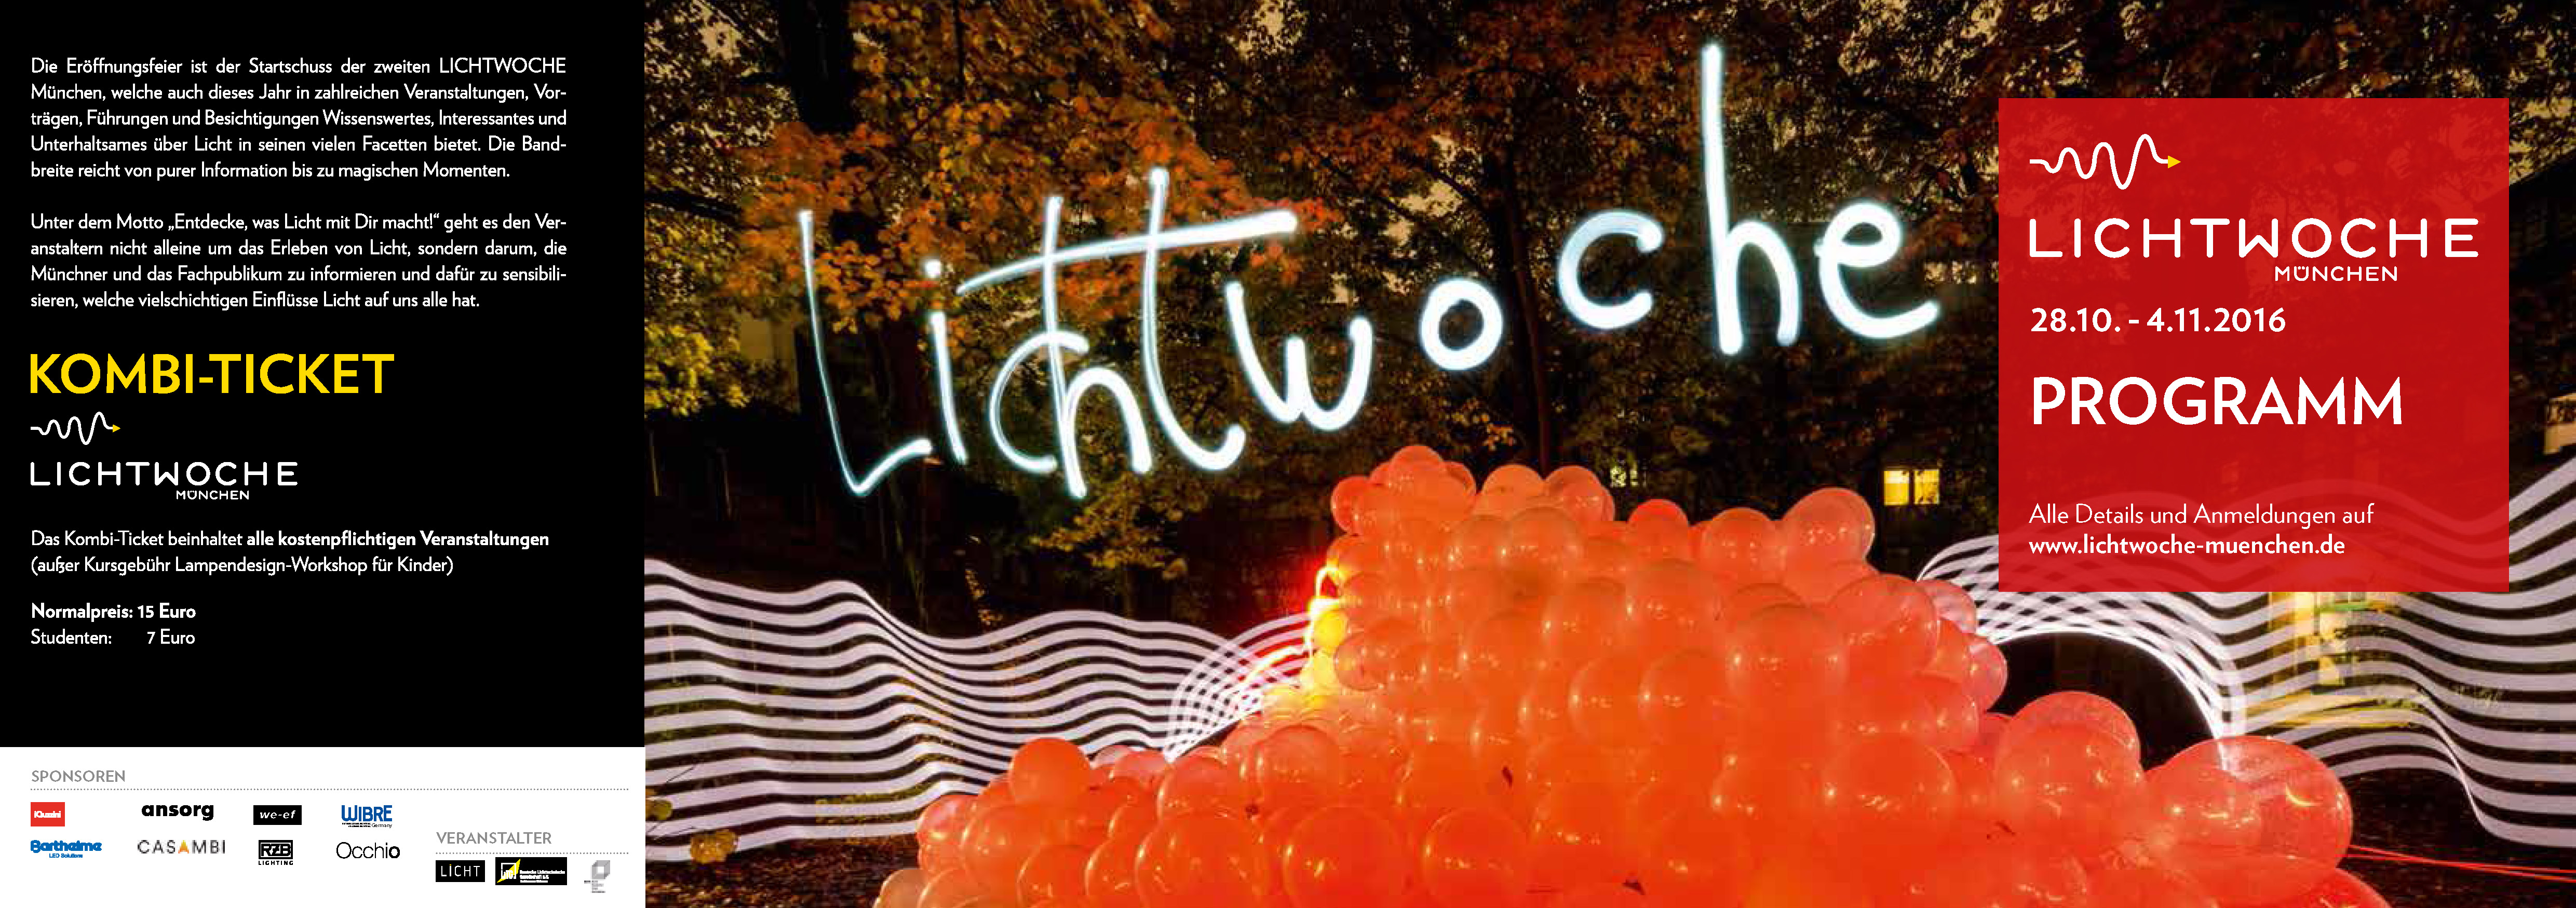 LICHTWOCHE München 2016_Programmflyer_Seite_1